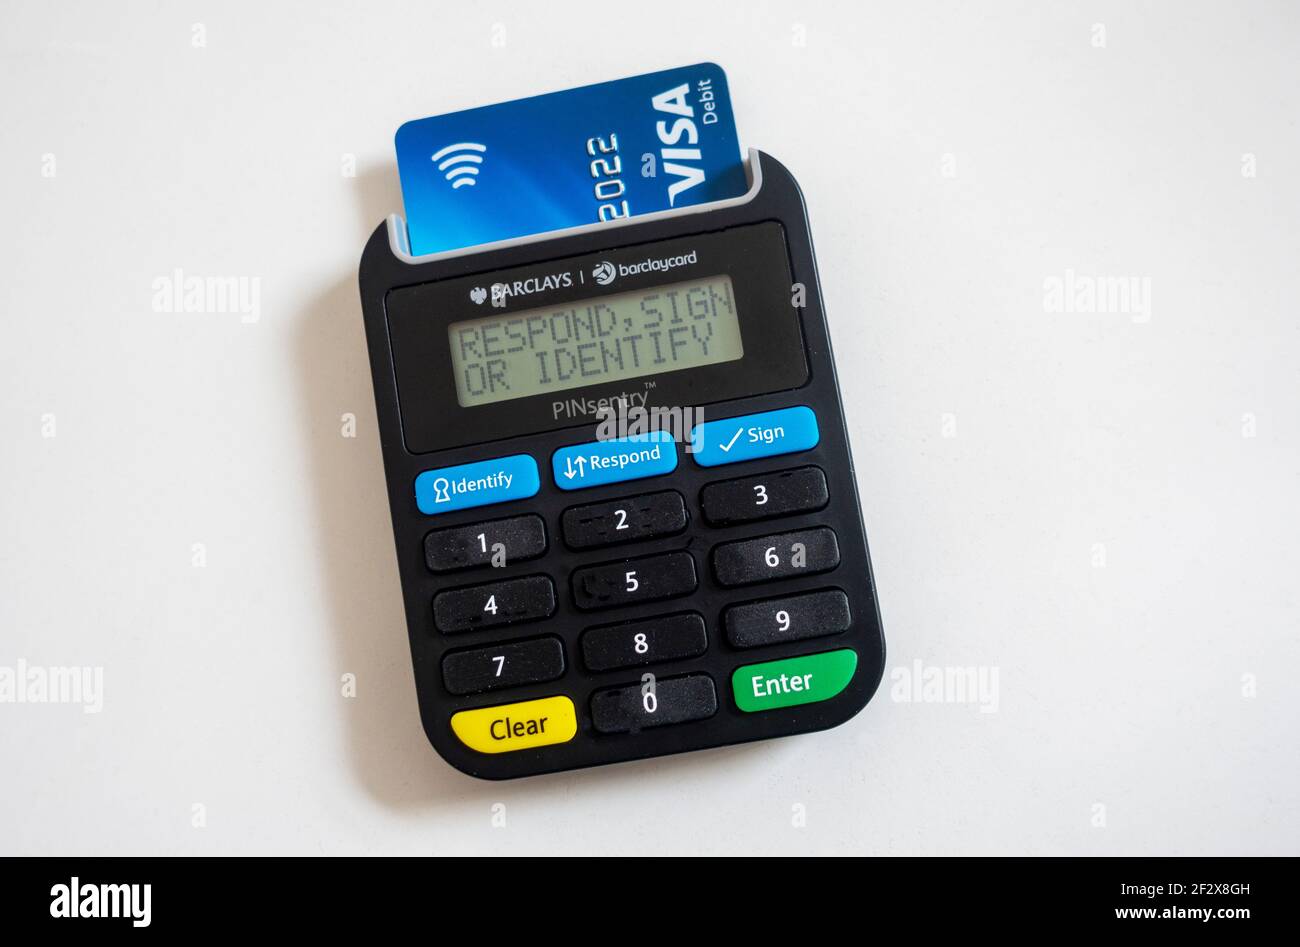 Barclays PINsentry card reader and Visa bank card Stock Photo